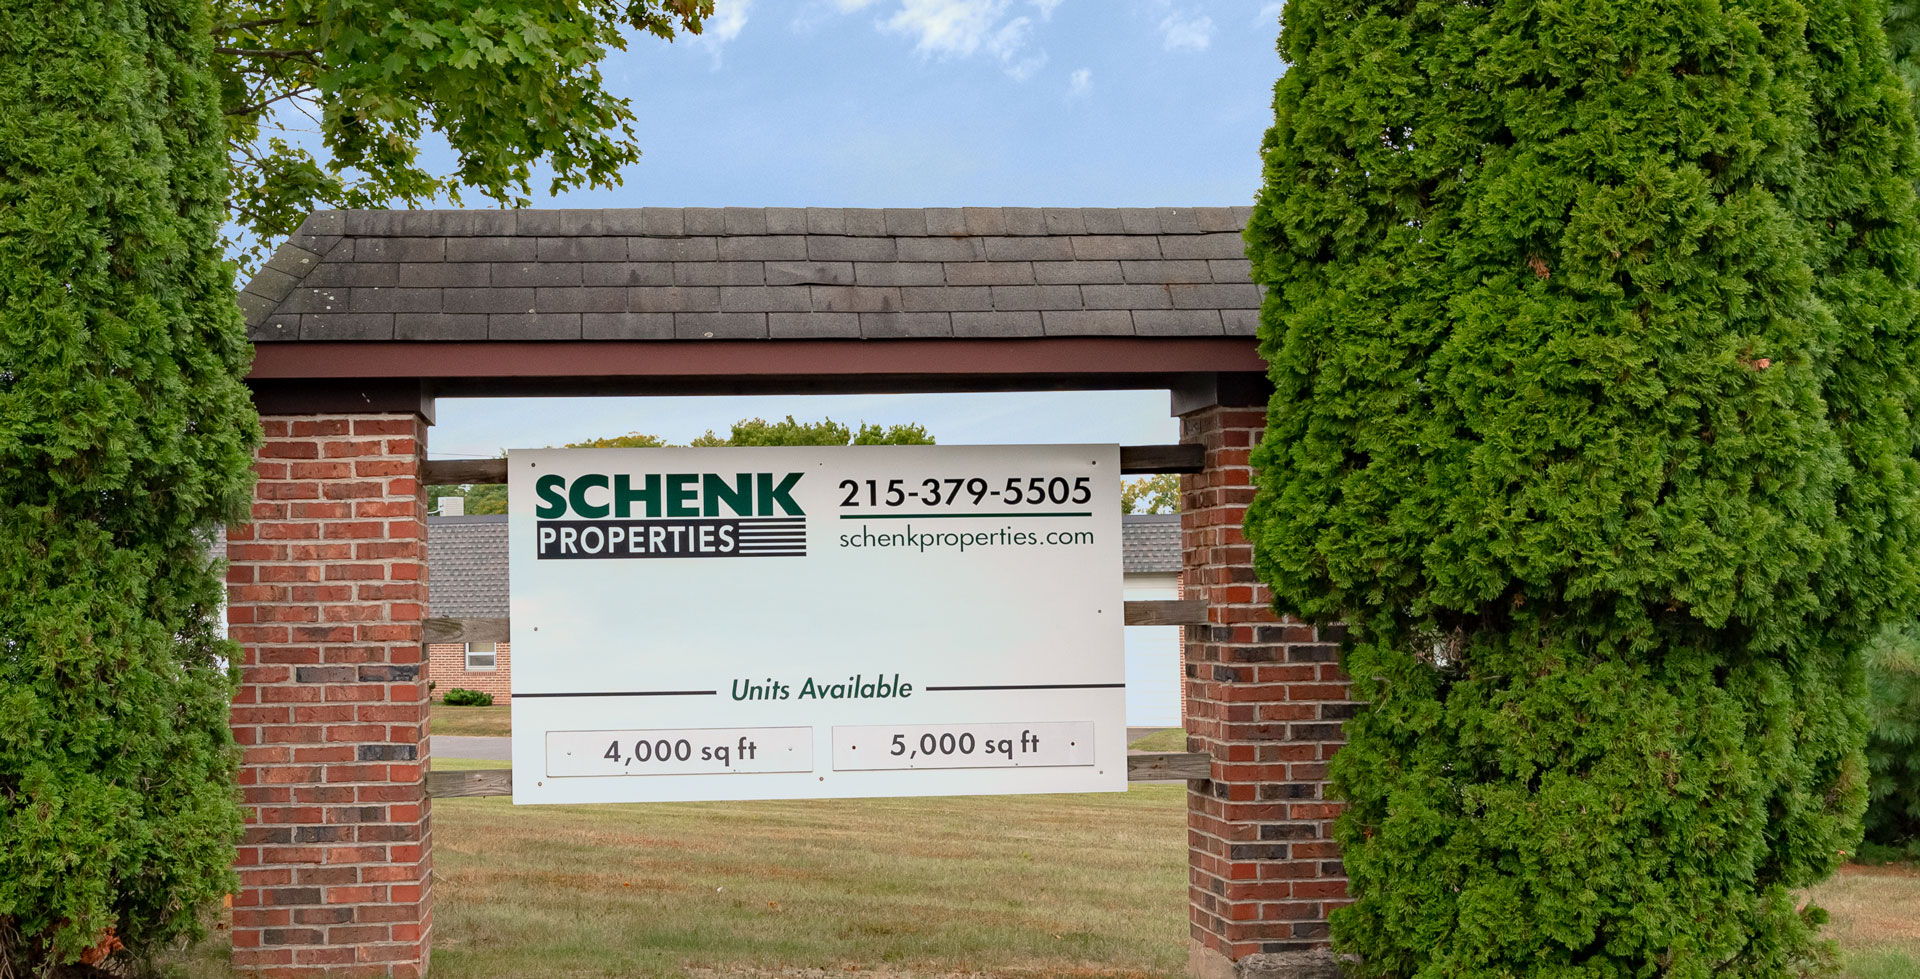 Scheck Properties - Best in Property Management